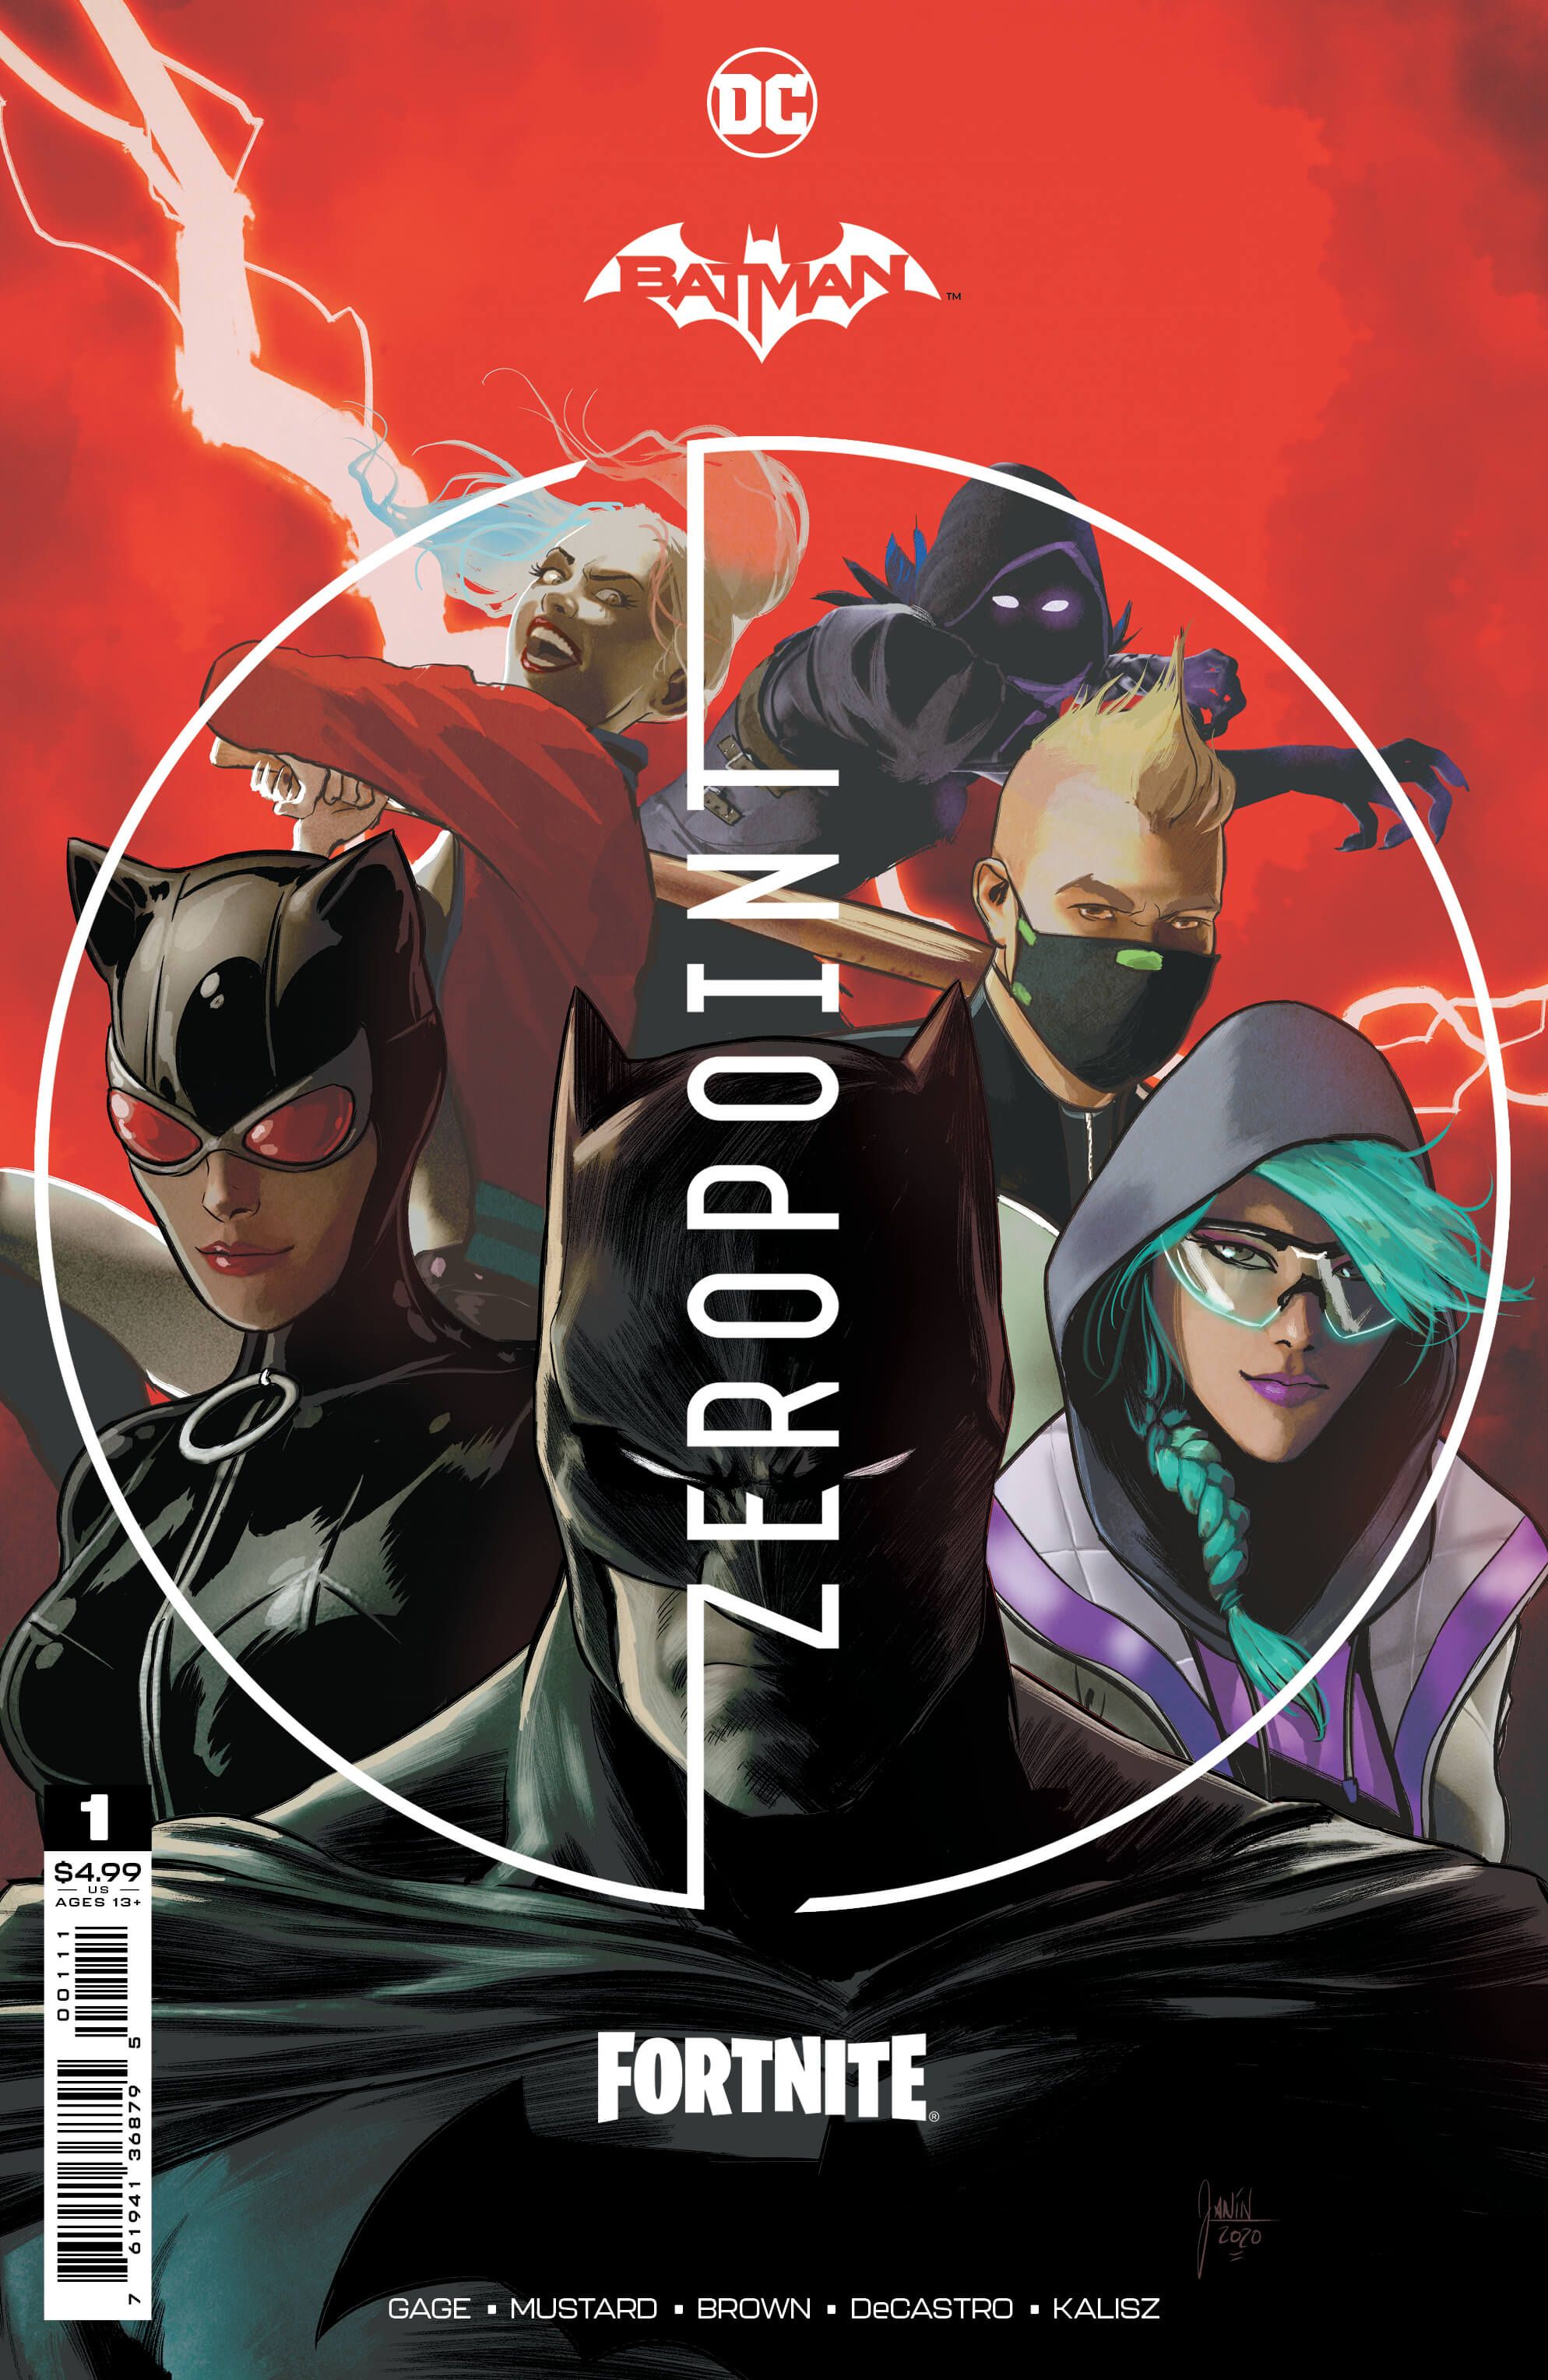 Universes Collide: BATMAN FORTNITE: ZERO POINT Limited Edition Comic Book Series Arrives April 20